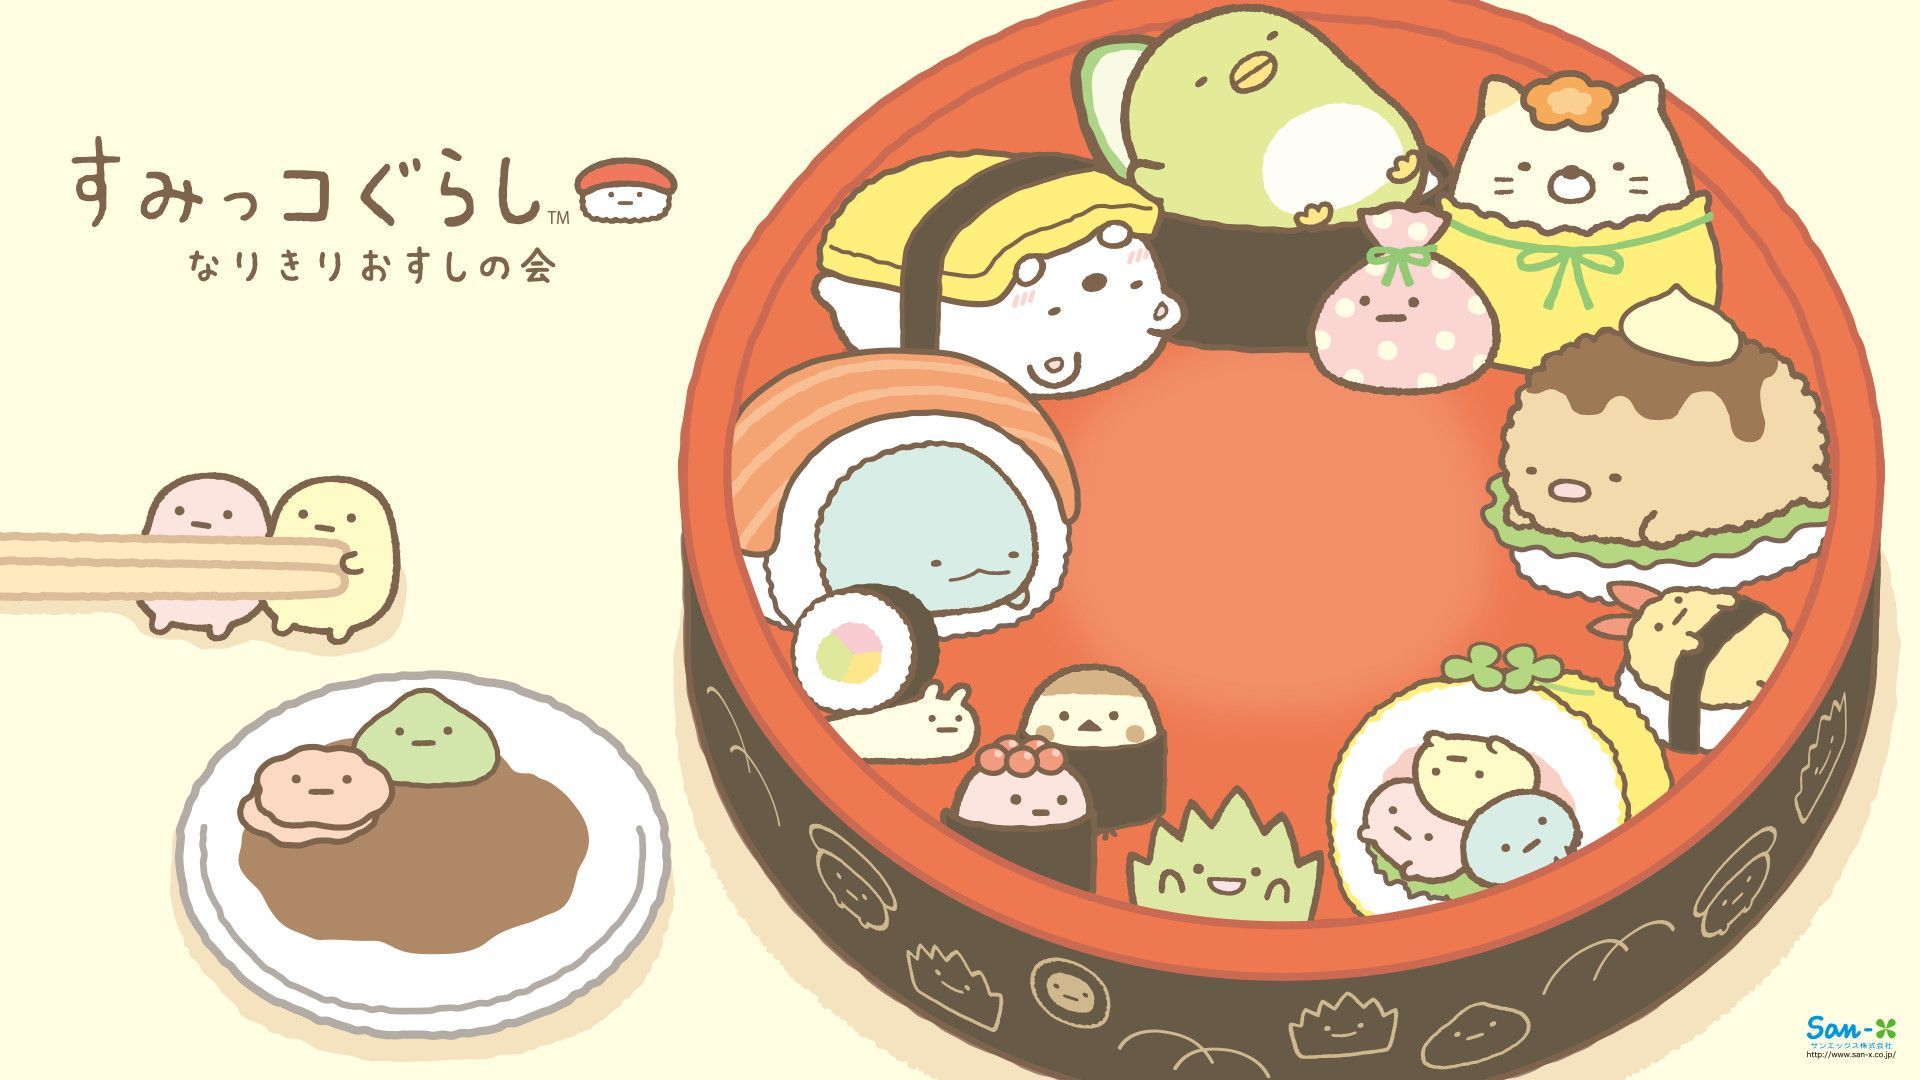 Cute Kawaii Food Wallpaper. Cute food wallpaper, Kawaii art, Cute drawings